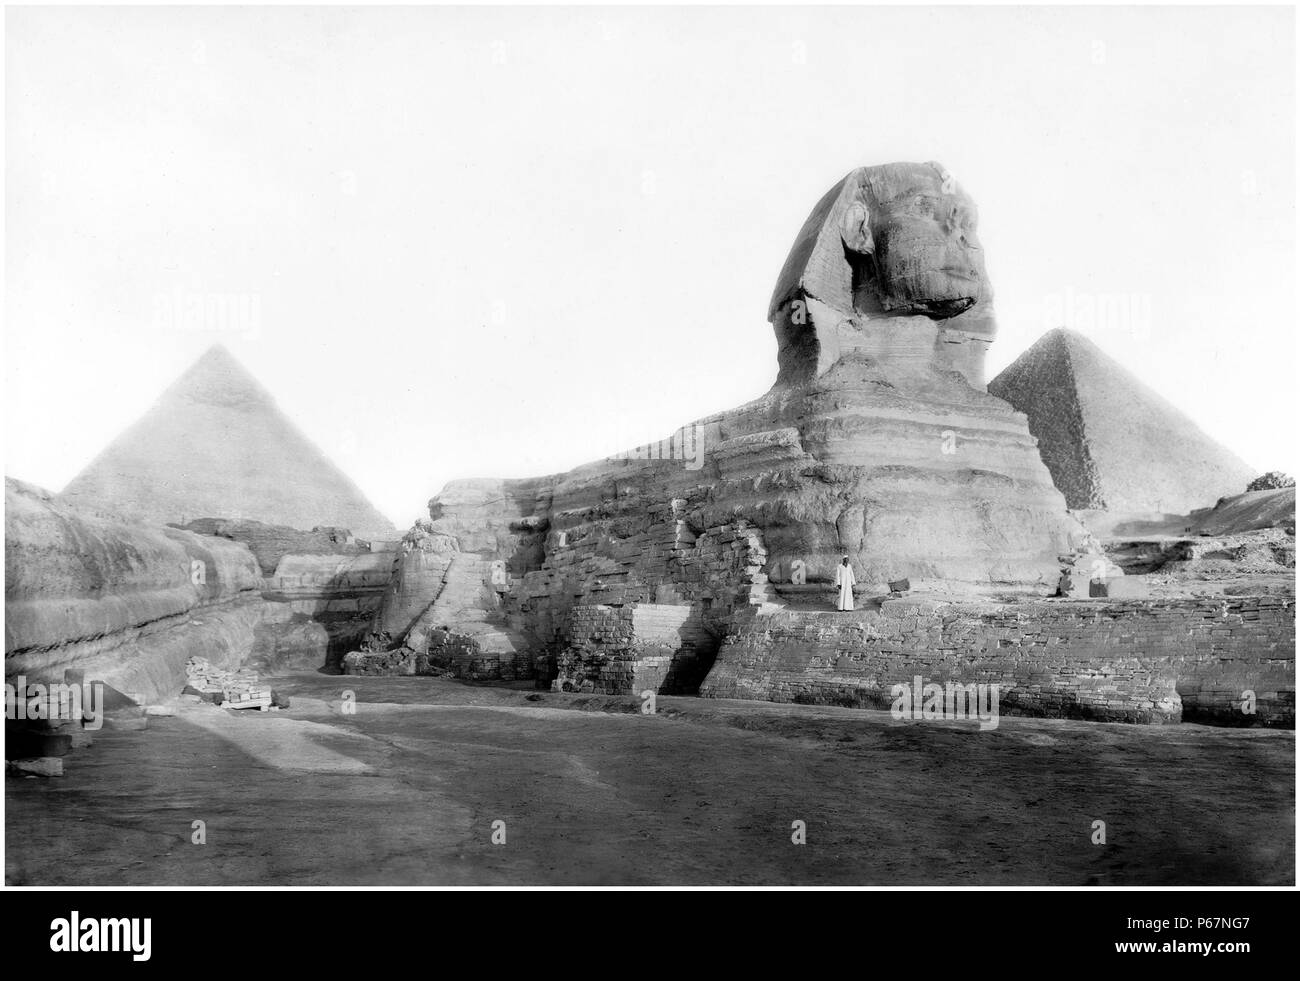 Image du Sphinx et des pyramides d'Égypte. La photo a été prise autour de 1934. Banque D'Images